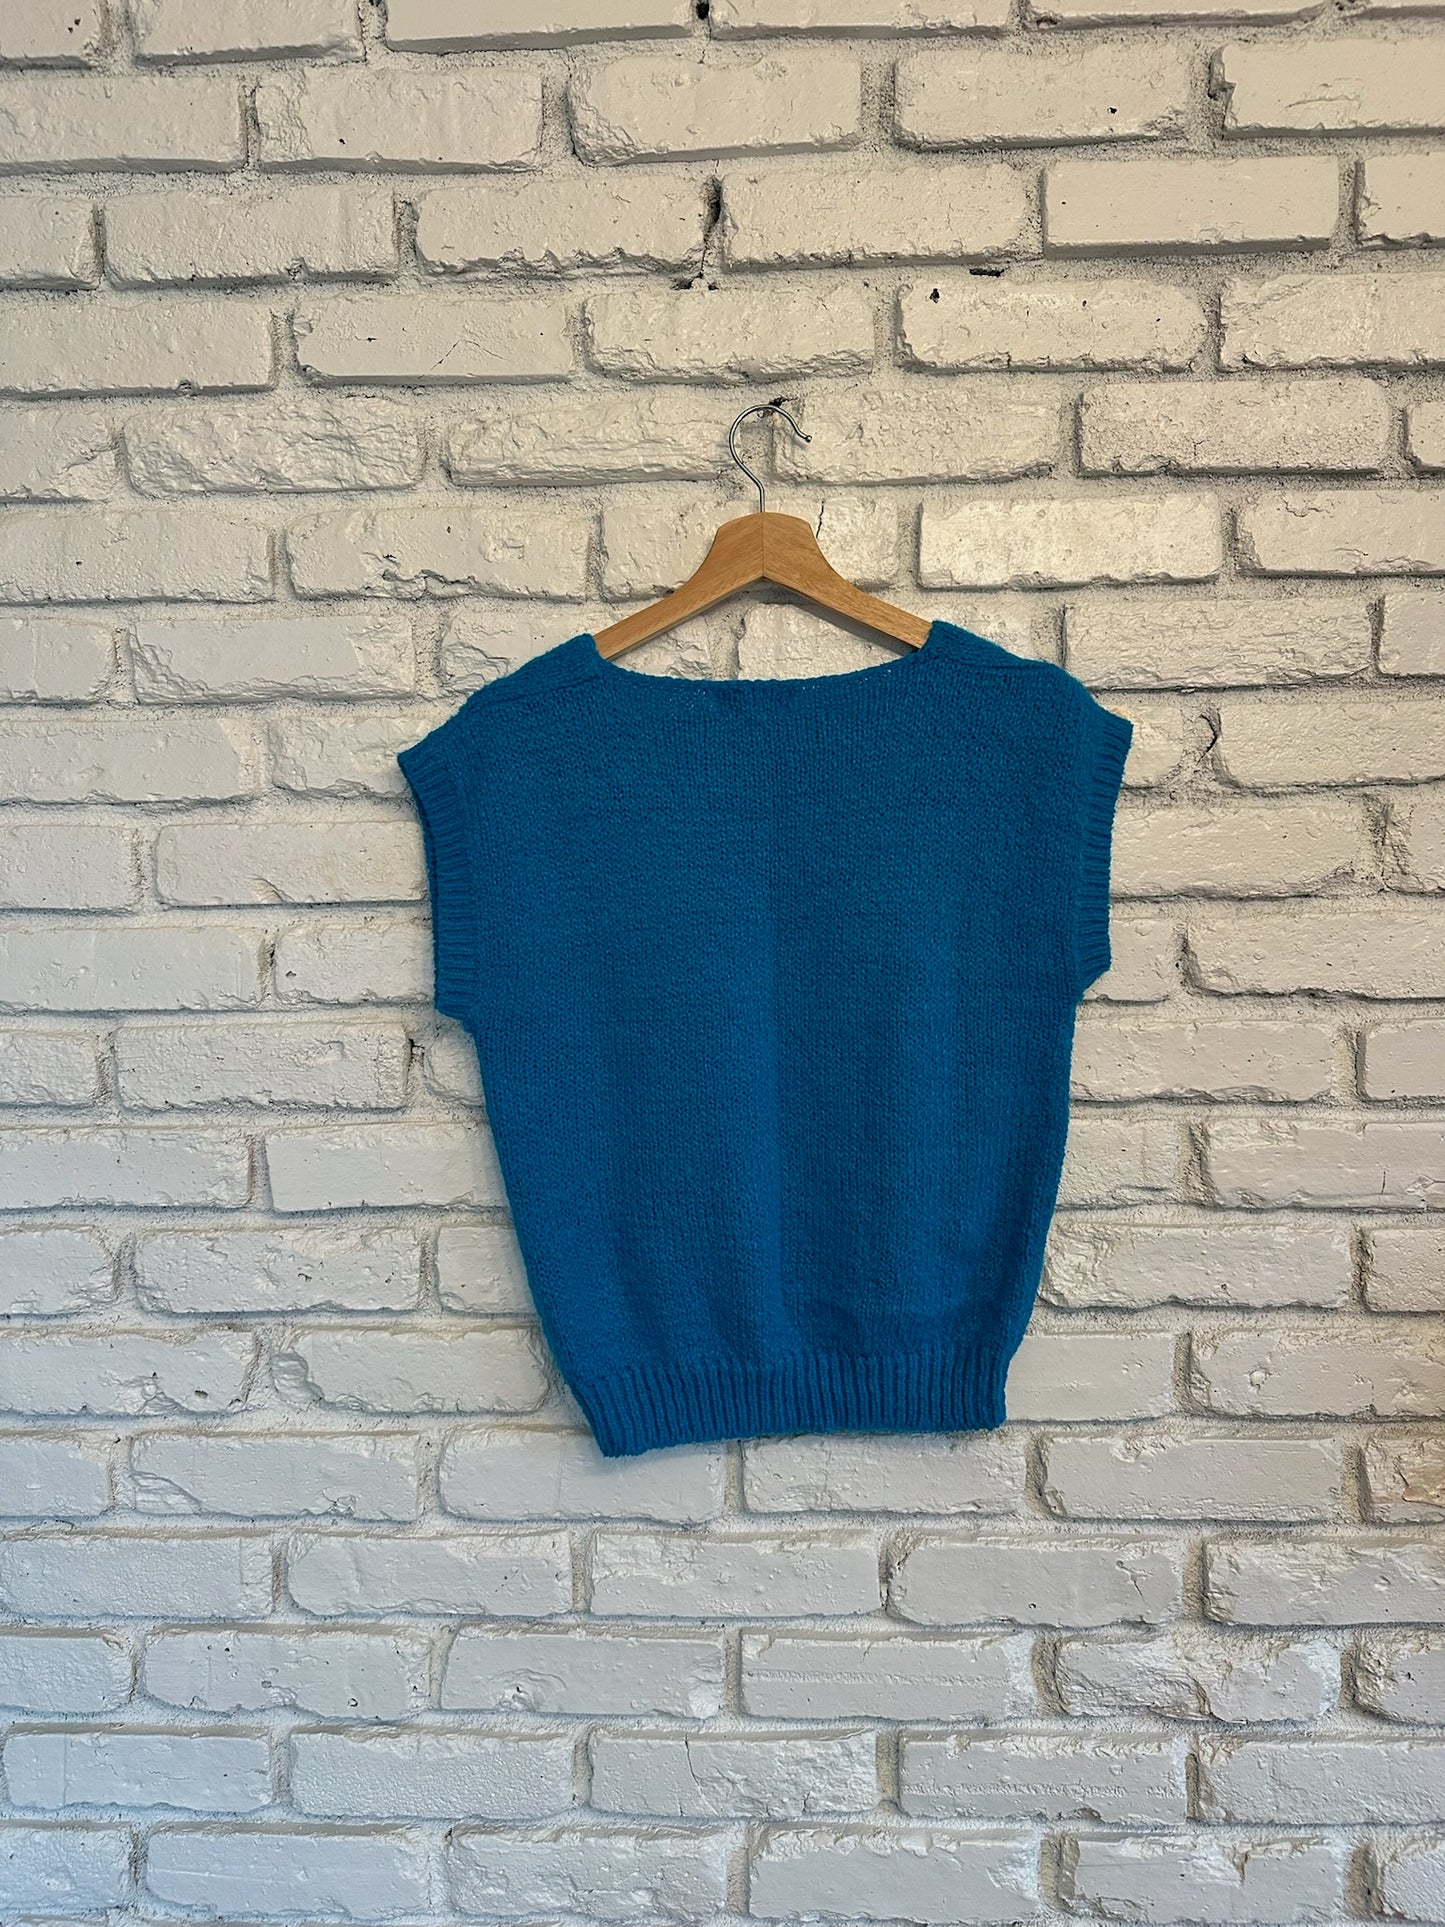 The Jones Blue Knit Vest